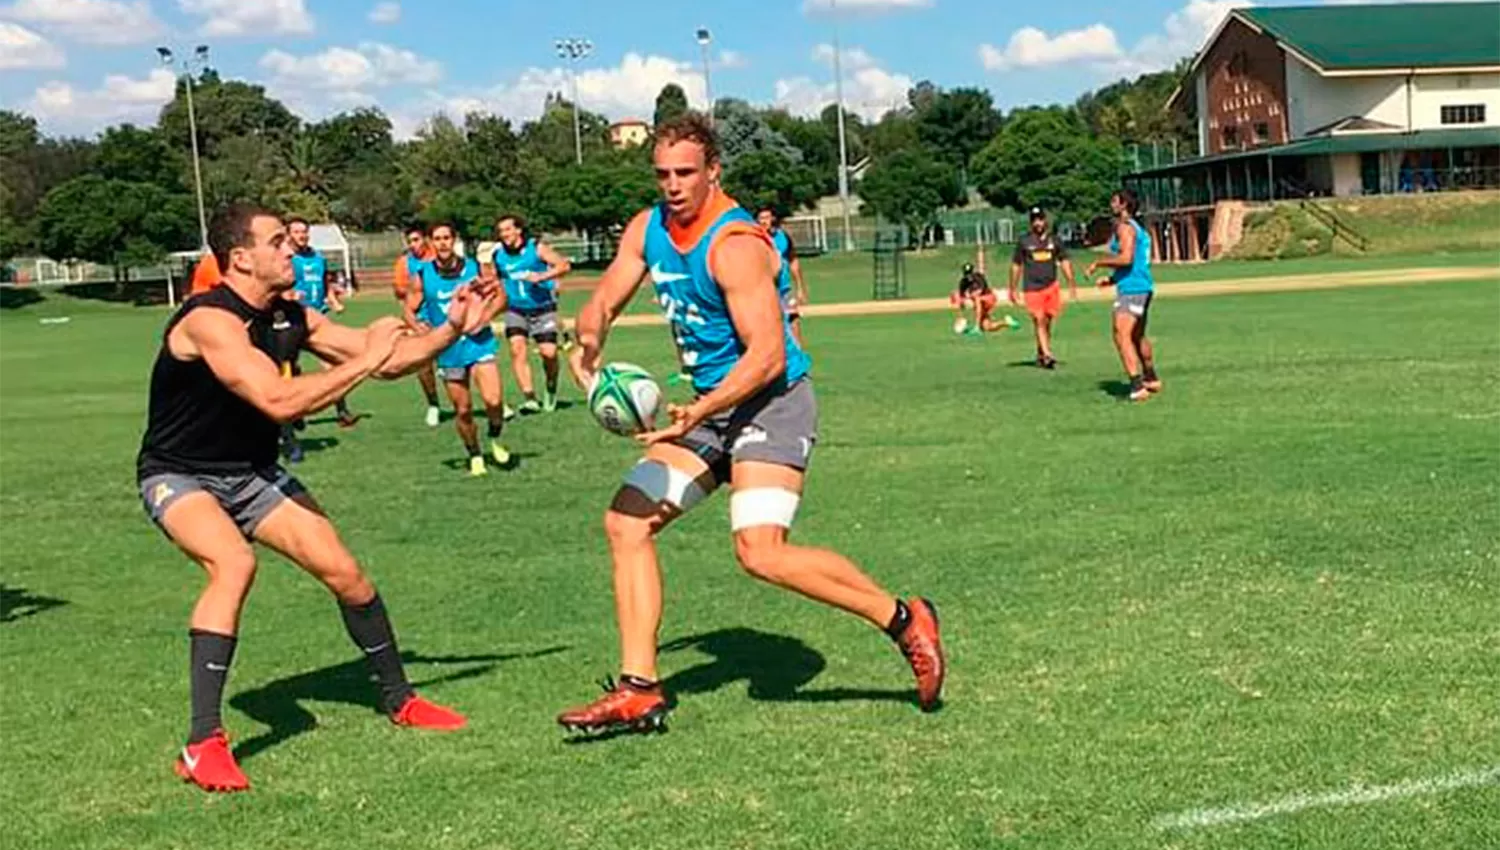 TODO LISTO. Los Jaguares entrenaron fuerte de cara al gran debut de cara al Super Rugby (@JaguaresAR)